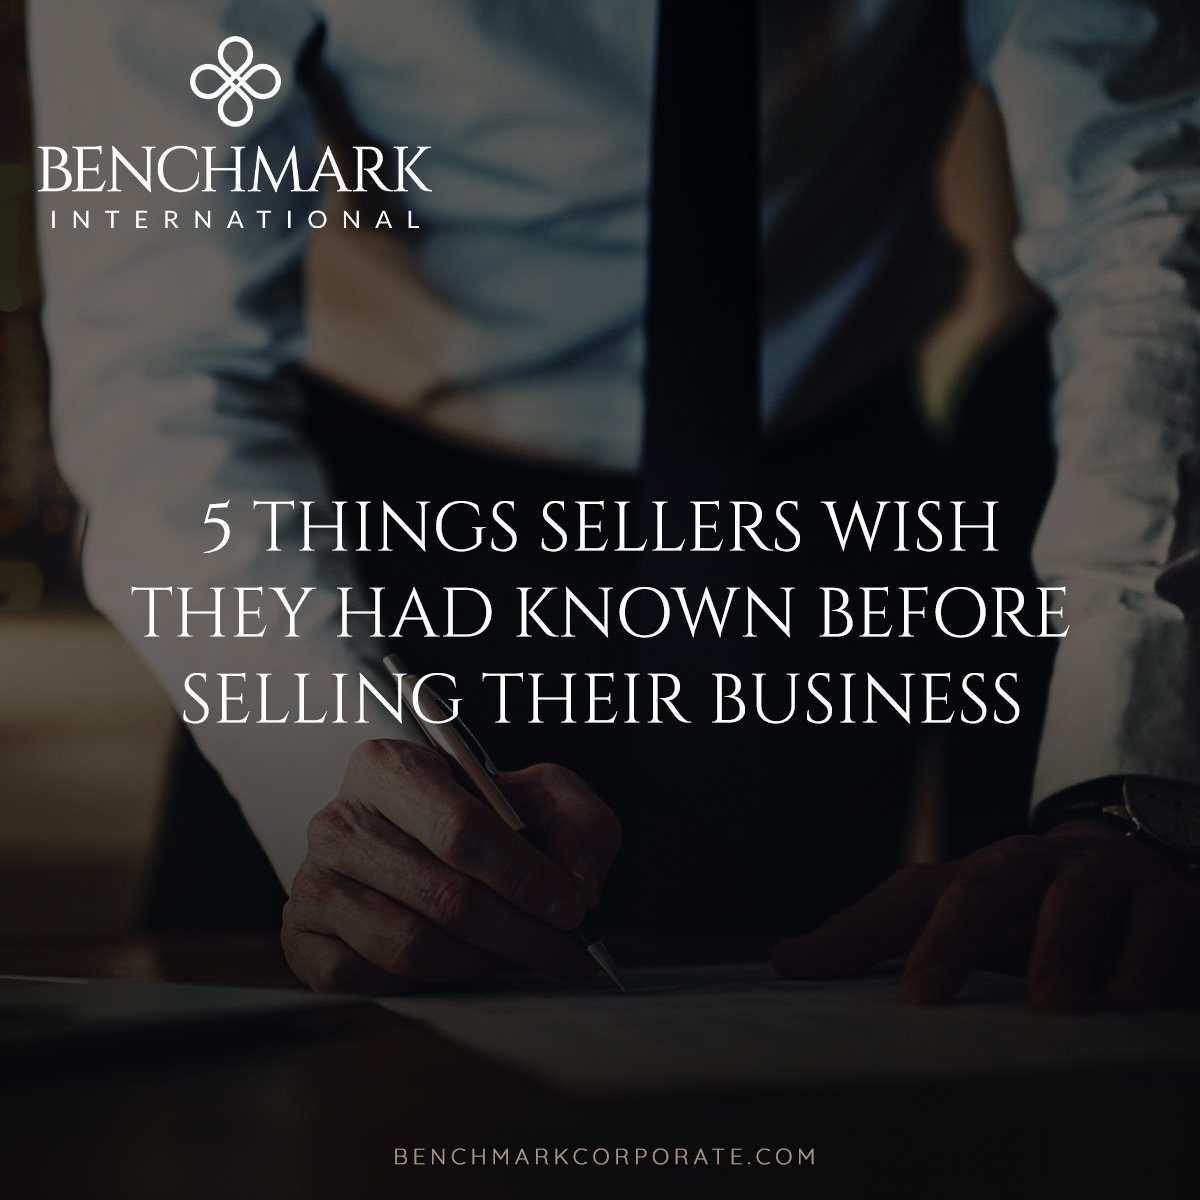 5_Things_Sellers_Wish-Social